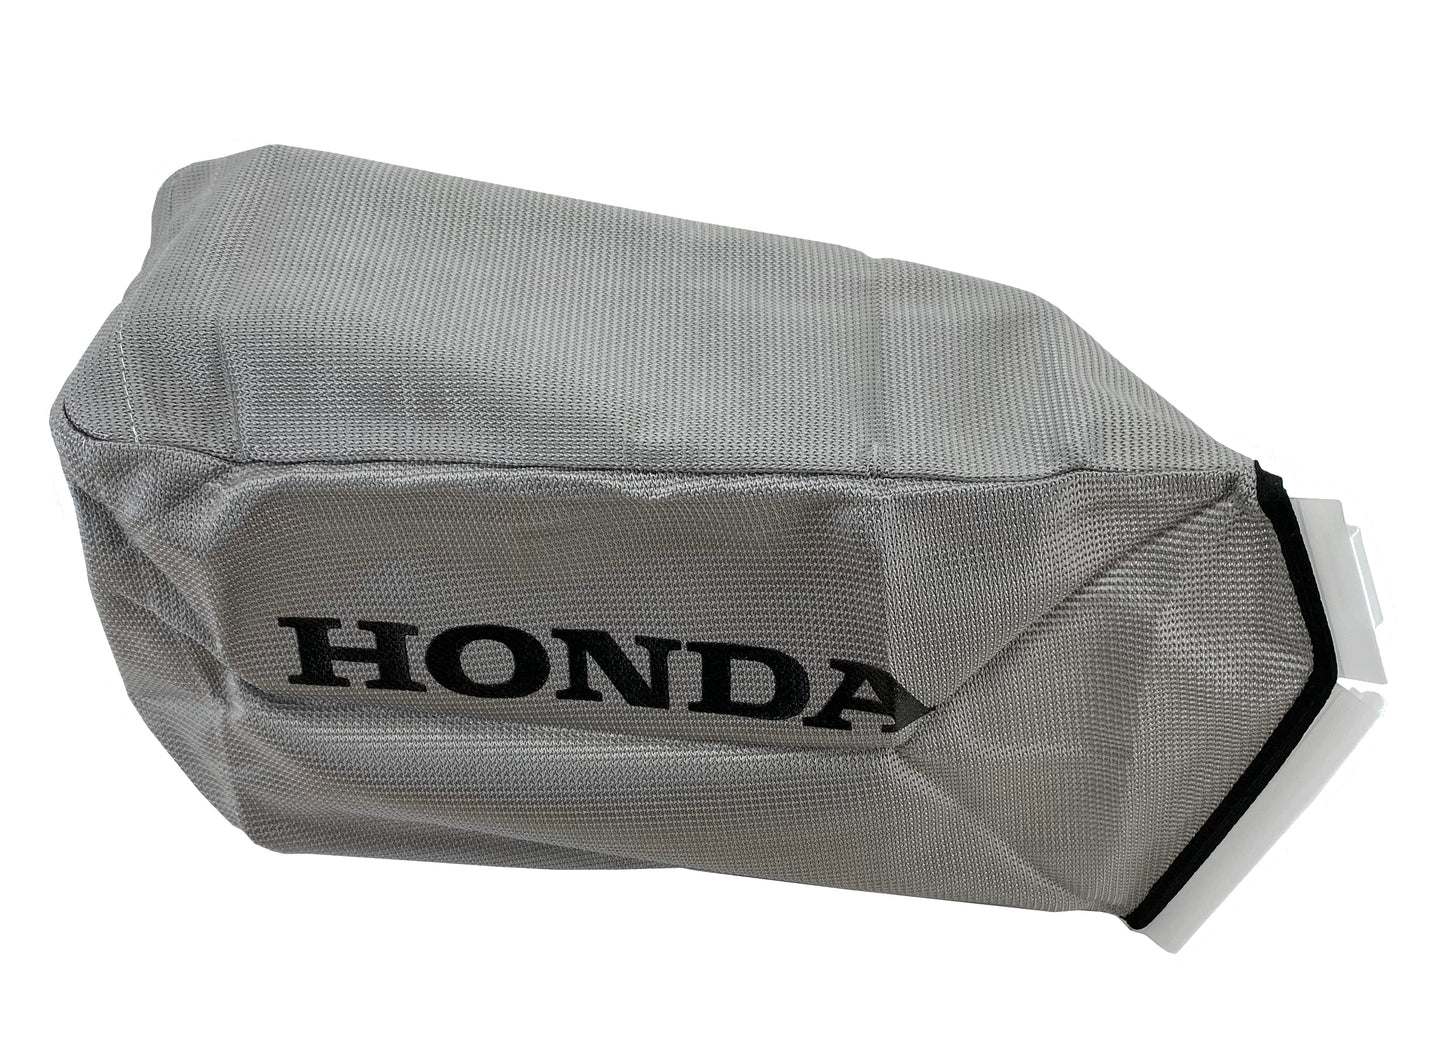 Honda Original Equipment Grass Bag Fabric - 81320-VH7-D00